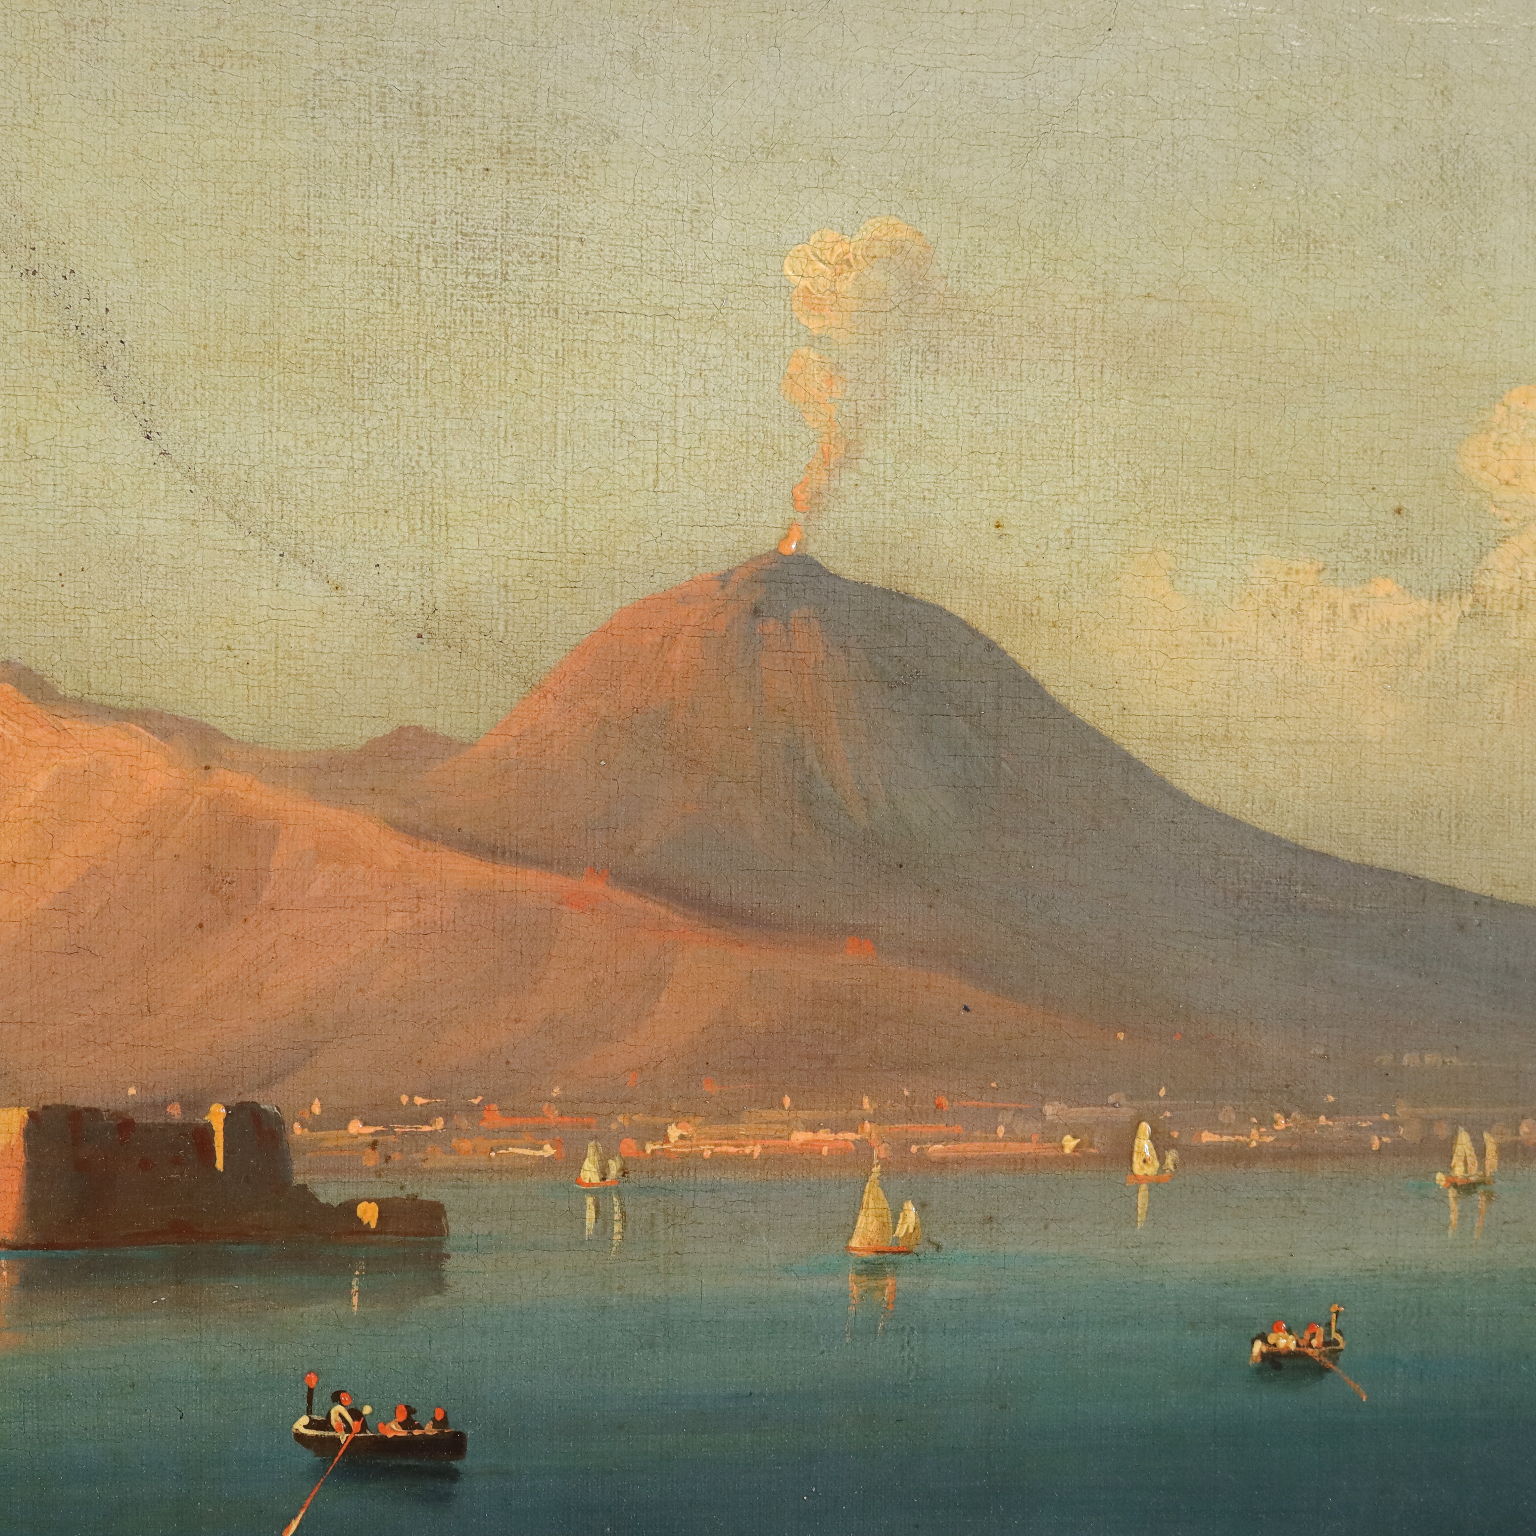 Golfo di Napoli - Quadri Moderni di Napoli su Tela